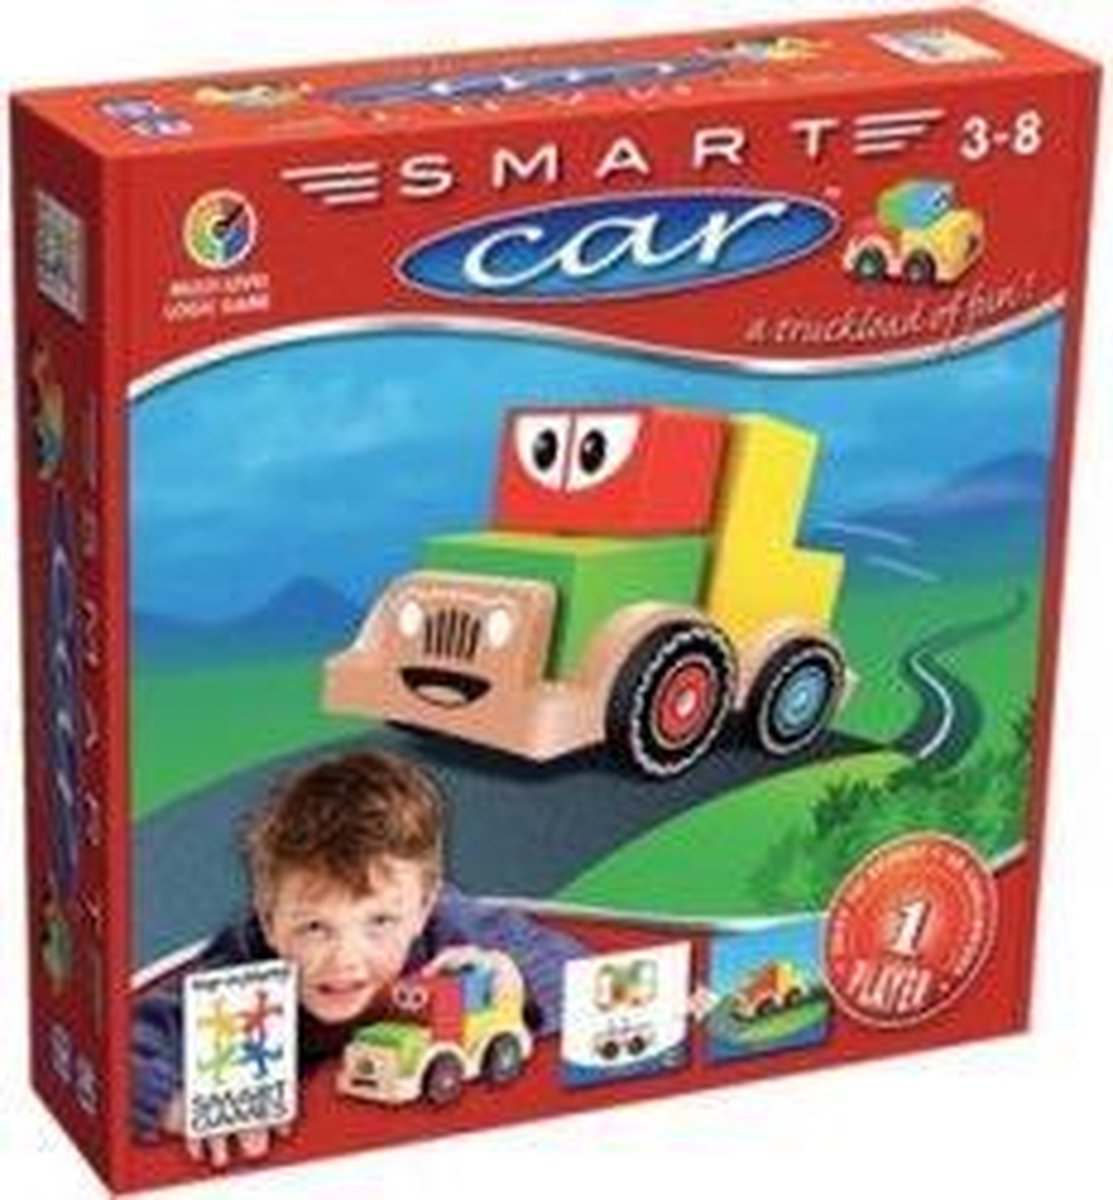 bol.com | Smart Games Smart Car | Games